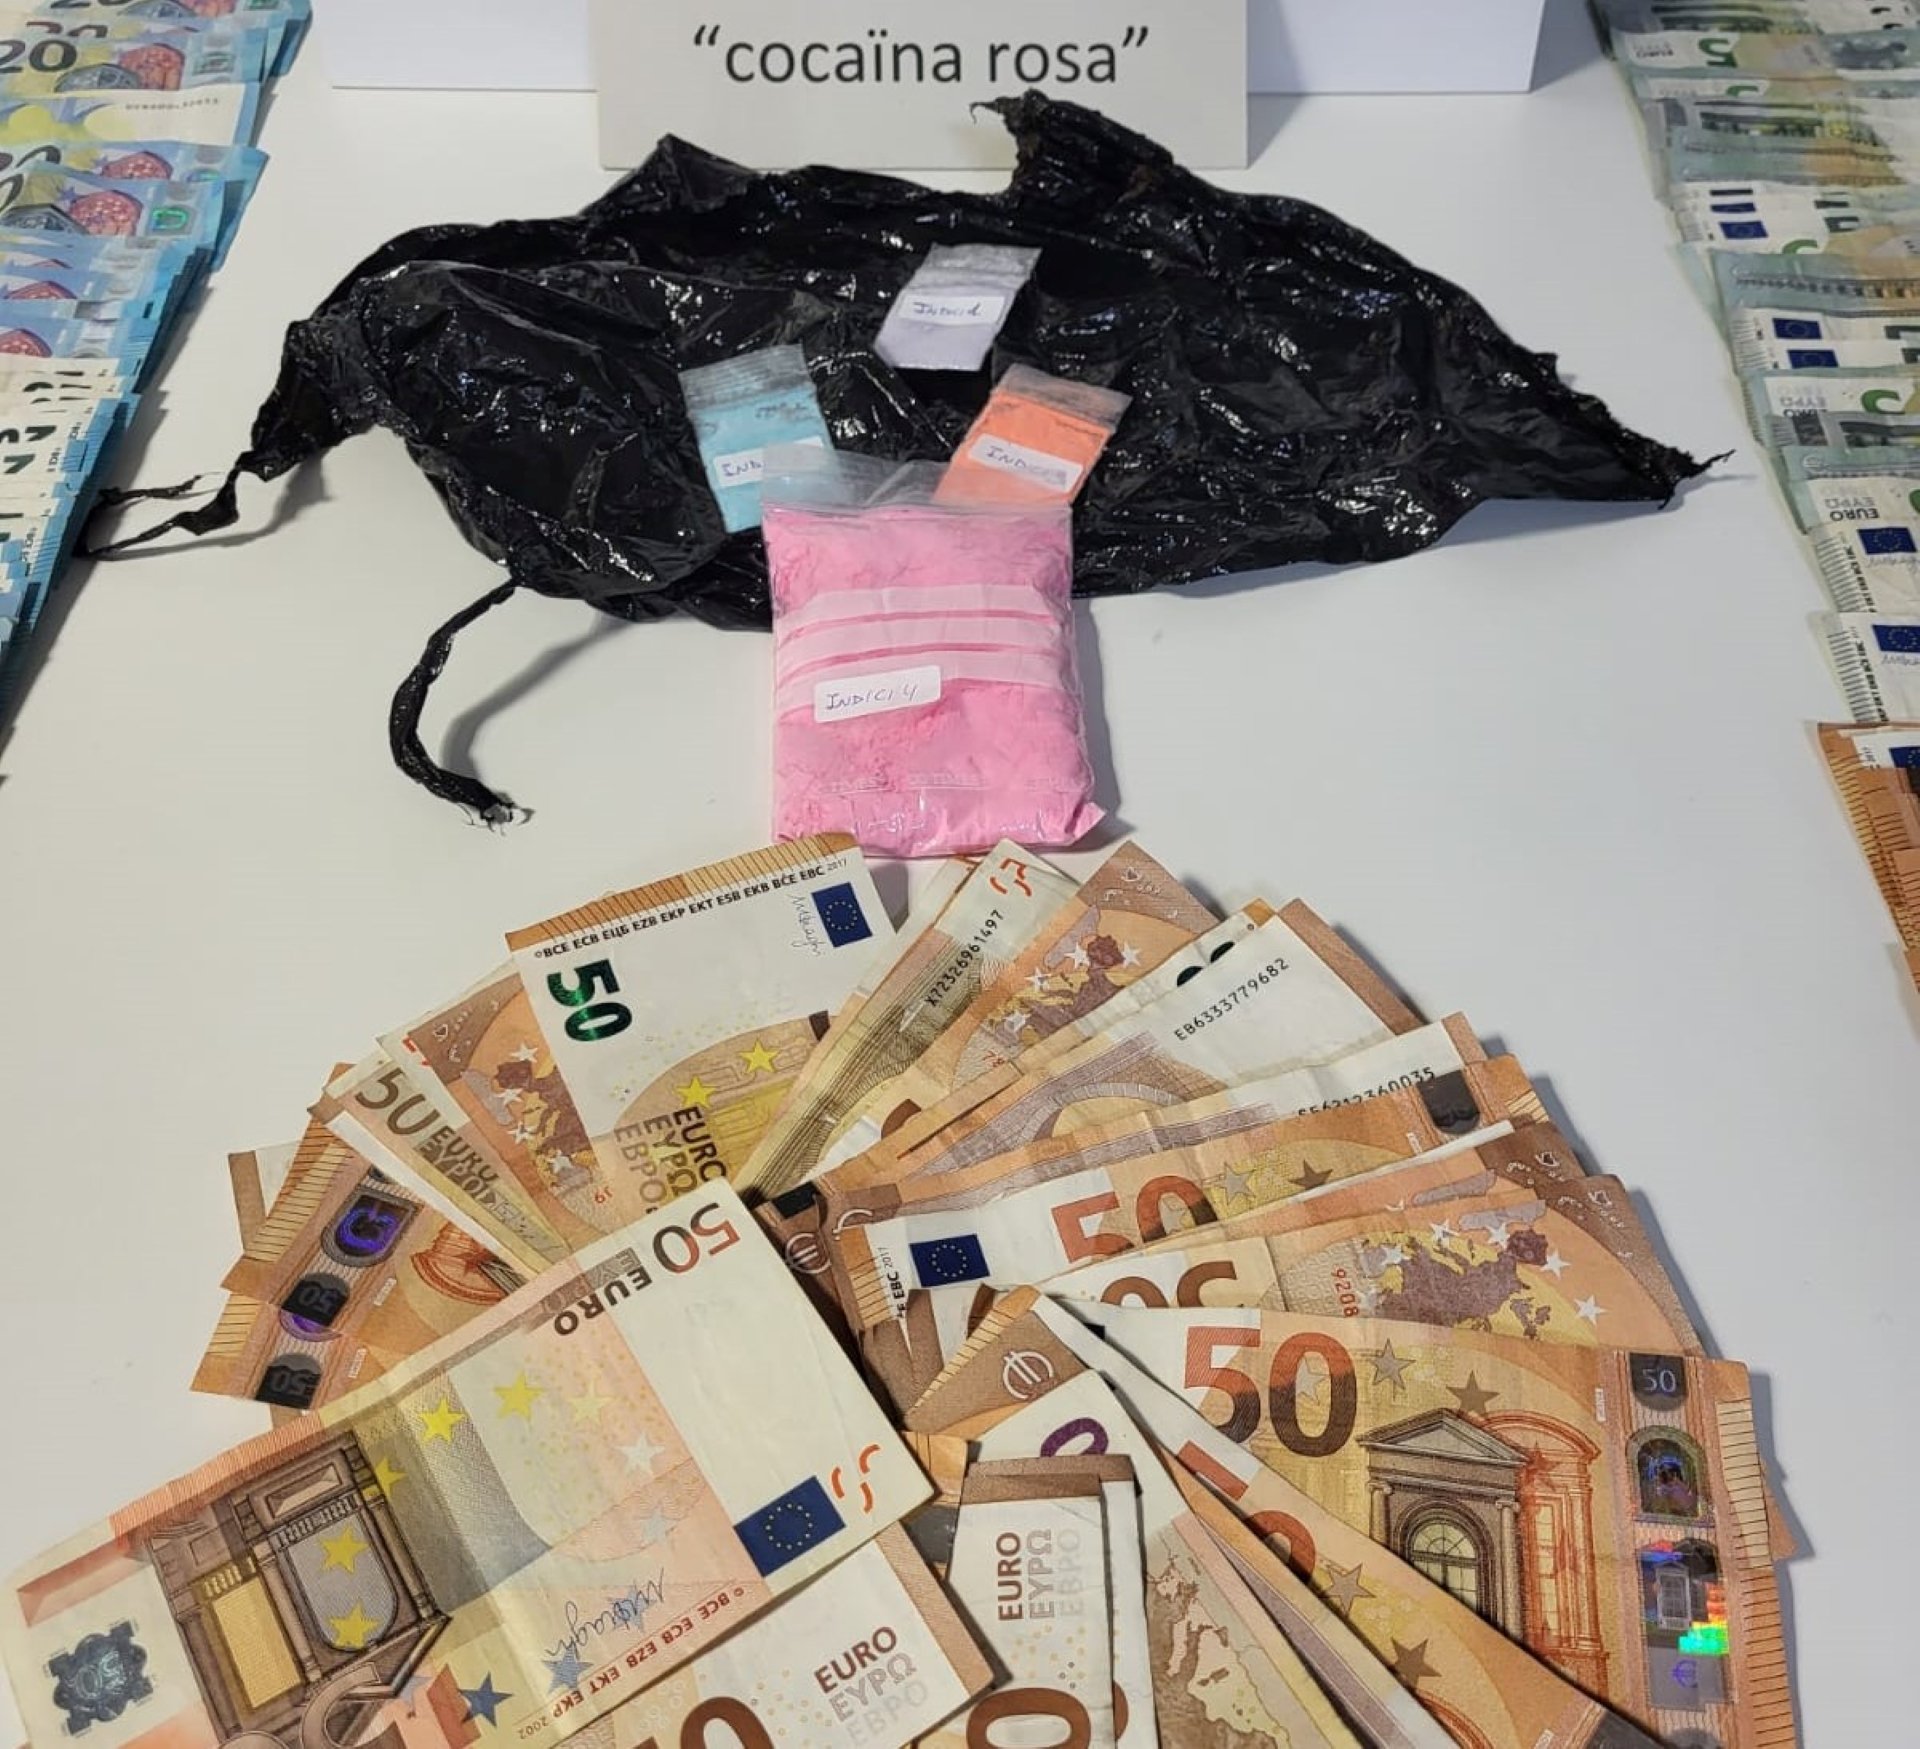 Cocaïna rosa i diners confiscats pels Mossos d'Esquadra